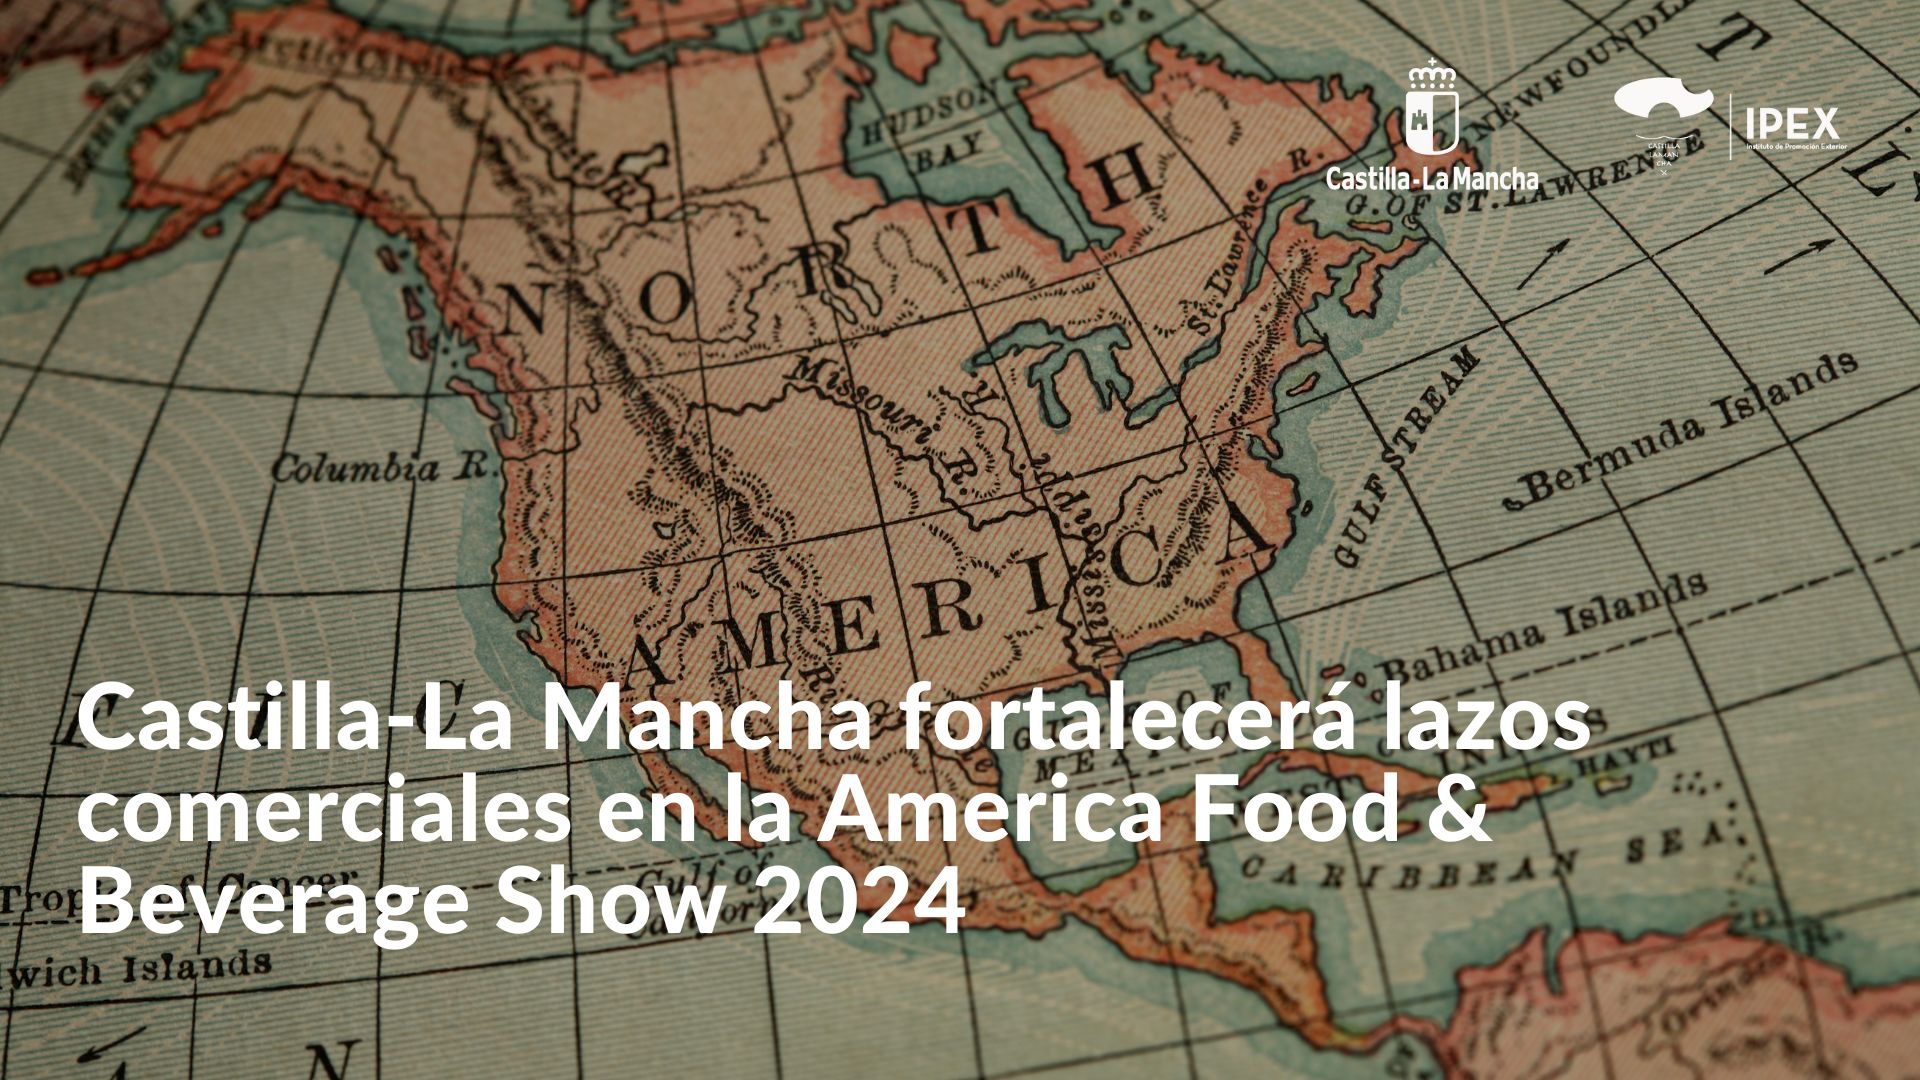 Castilla-La Mancha fortalecer lazos comerciales en la America Food & Beverage Show 2024